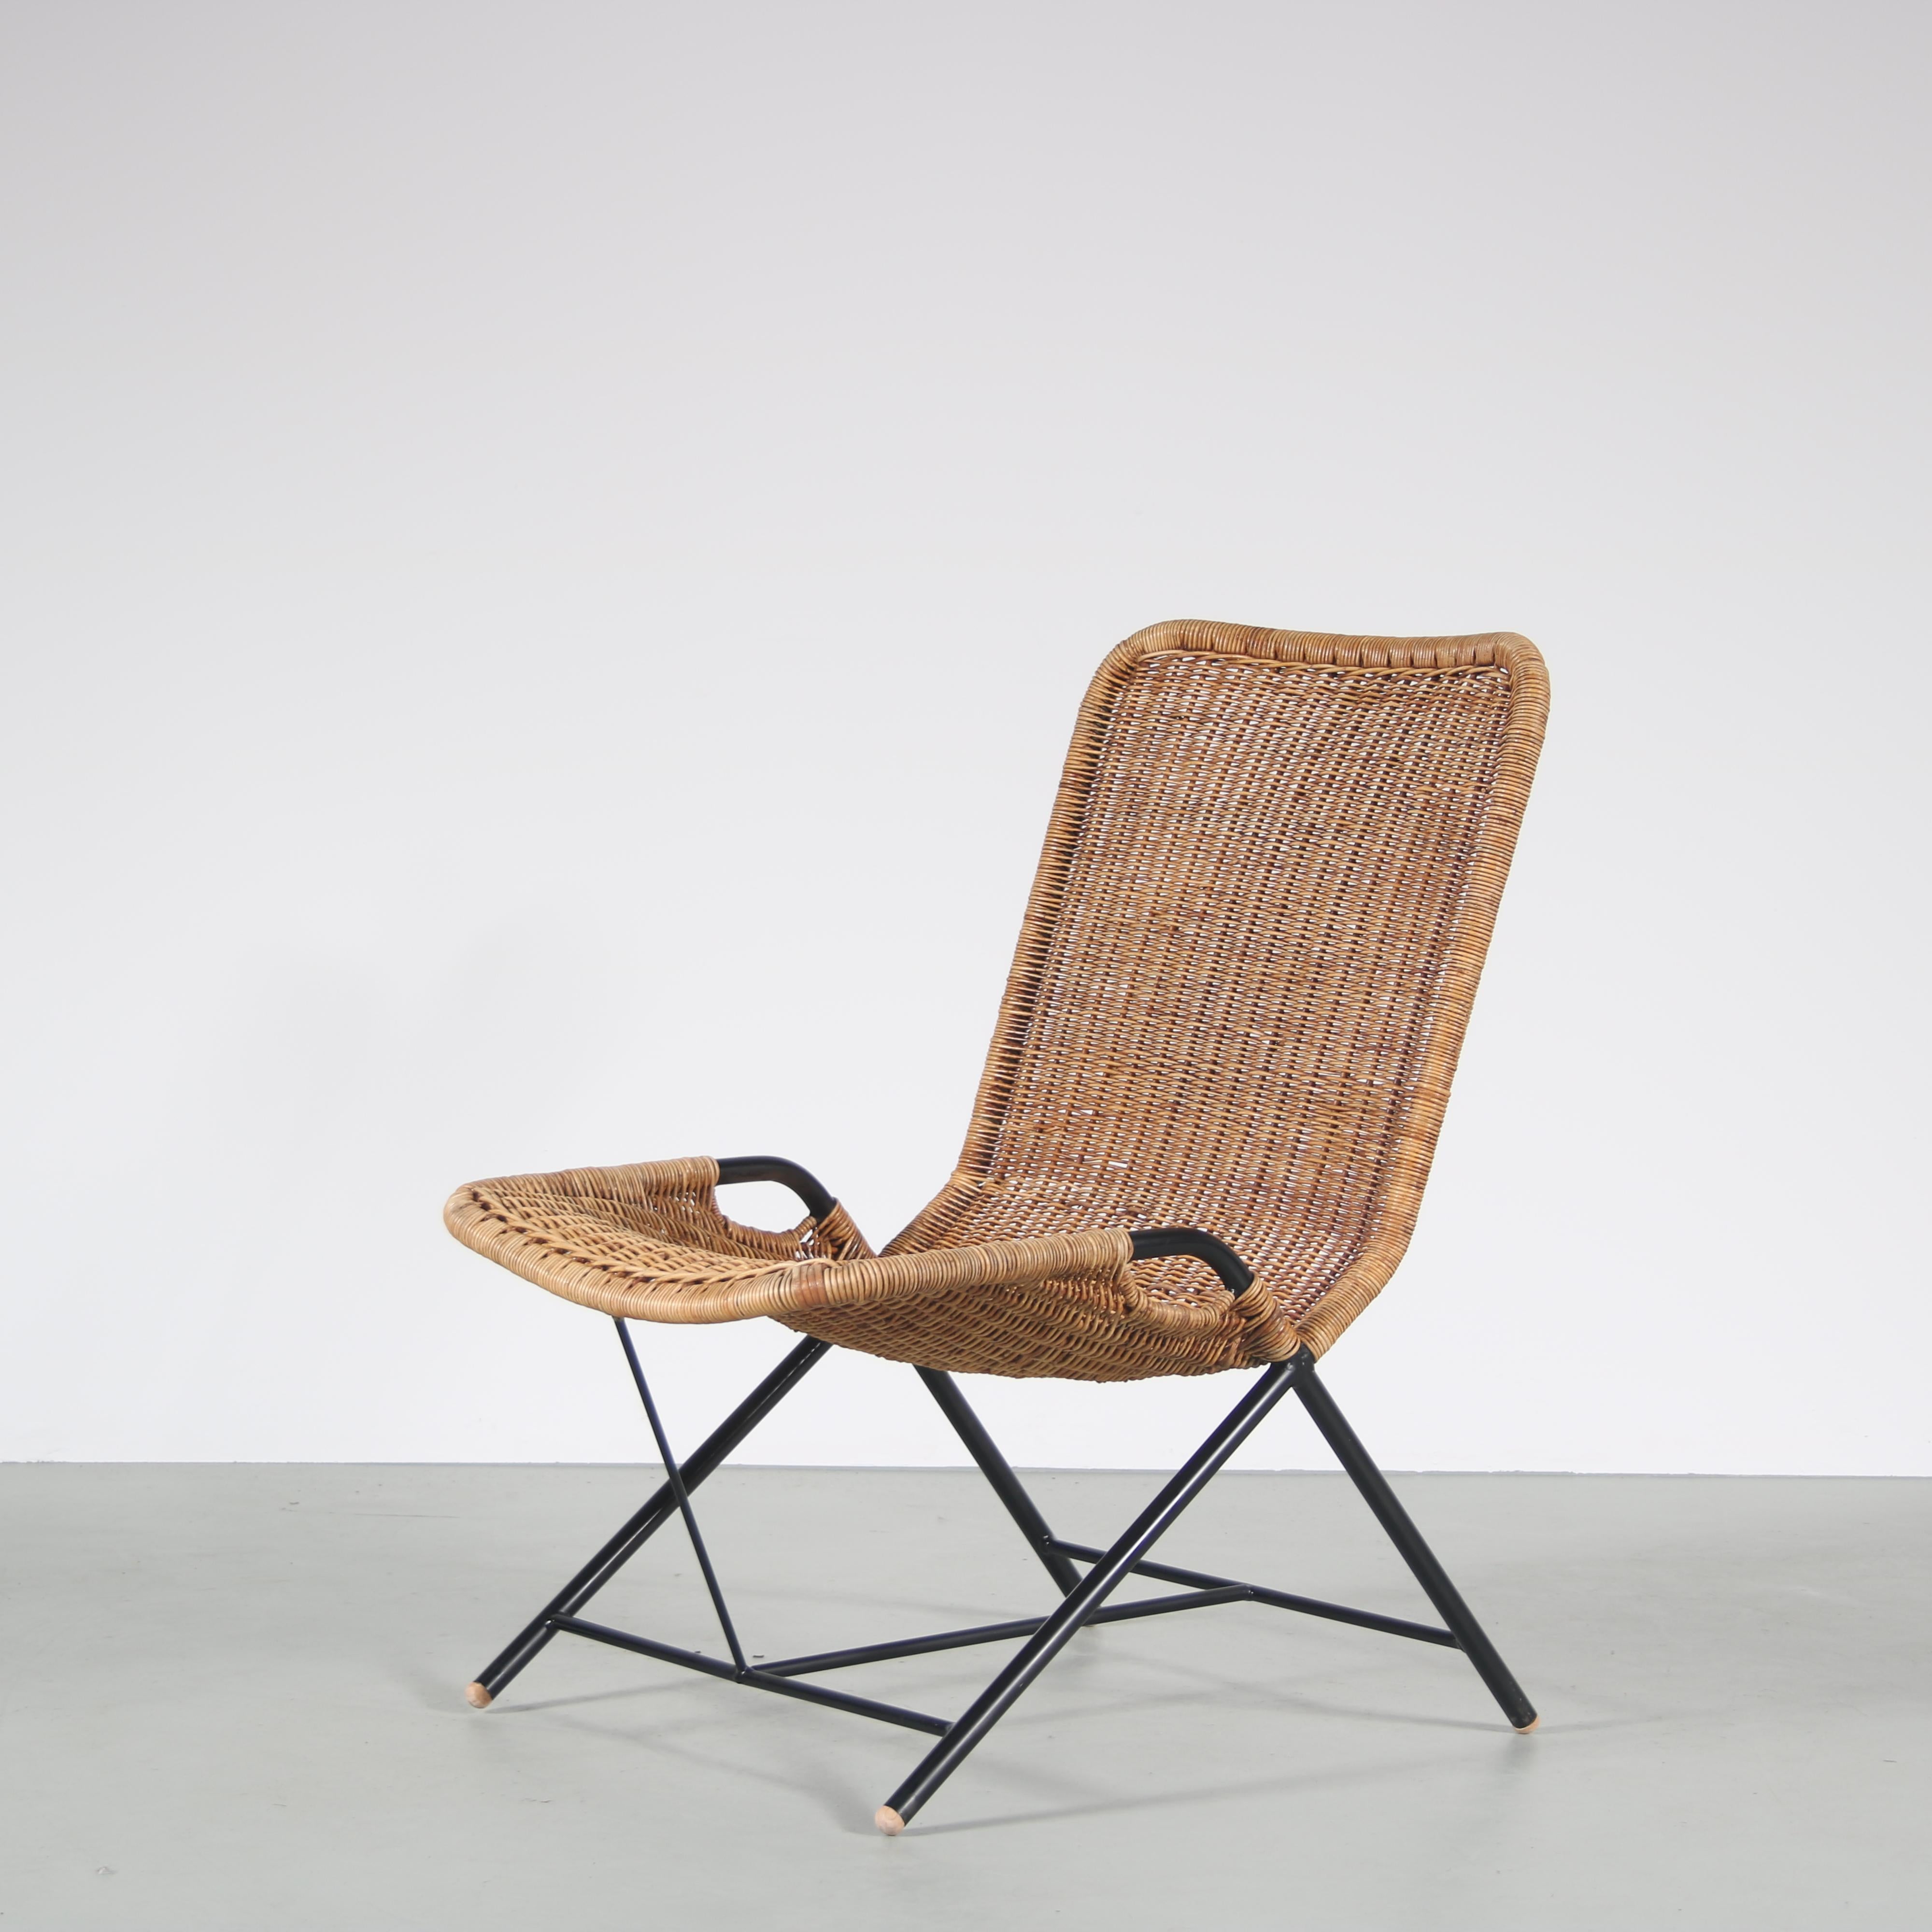 Ein schöner Esszimmerstuhl des niederländischen Designers Dirk van Sliedregt mit hohem Wiedererkennungswert. Hergestellt in den Niederlanden um 1950.

Der Stuhl, Modell 587, hat ein schwarz lackiertes Metallrohrgestell mit Korbpolsterung. Das